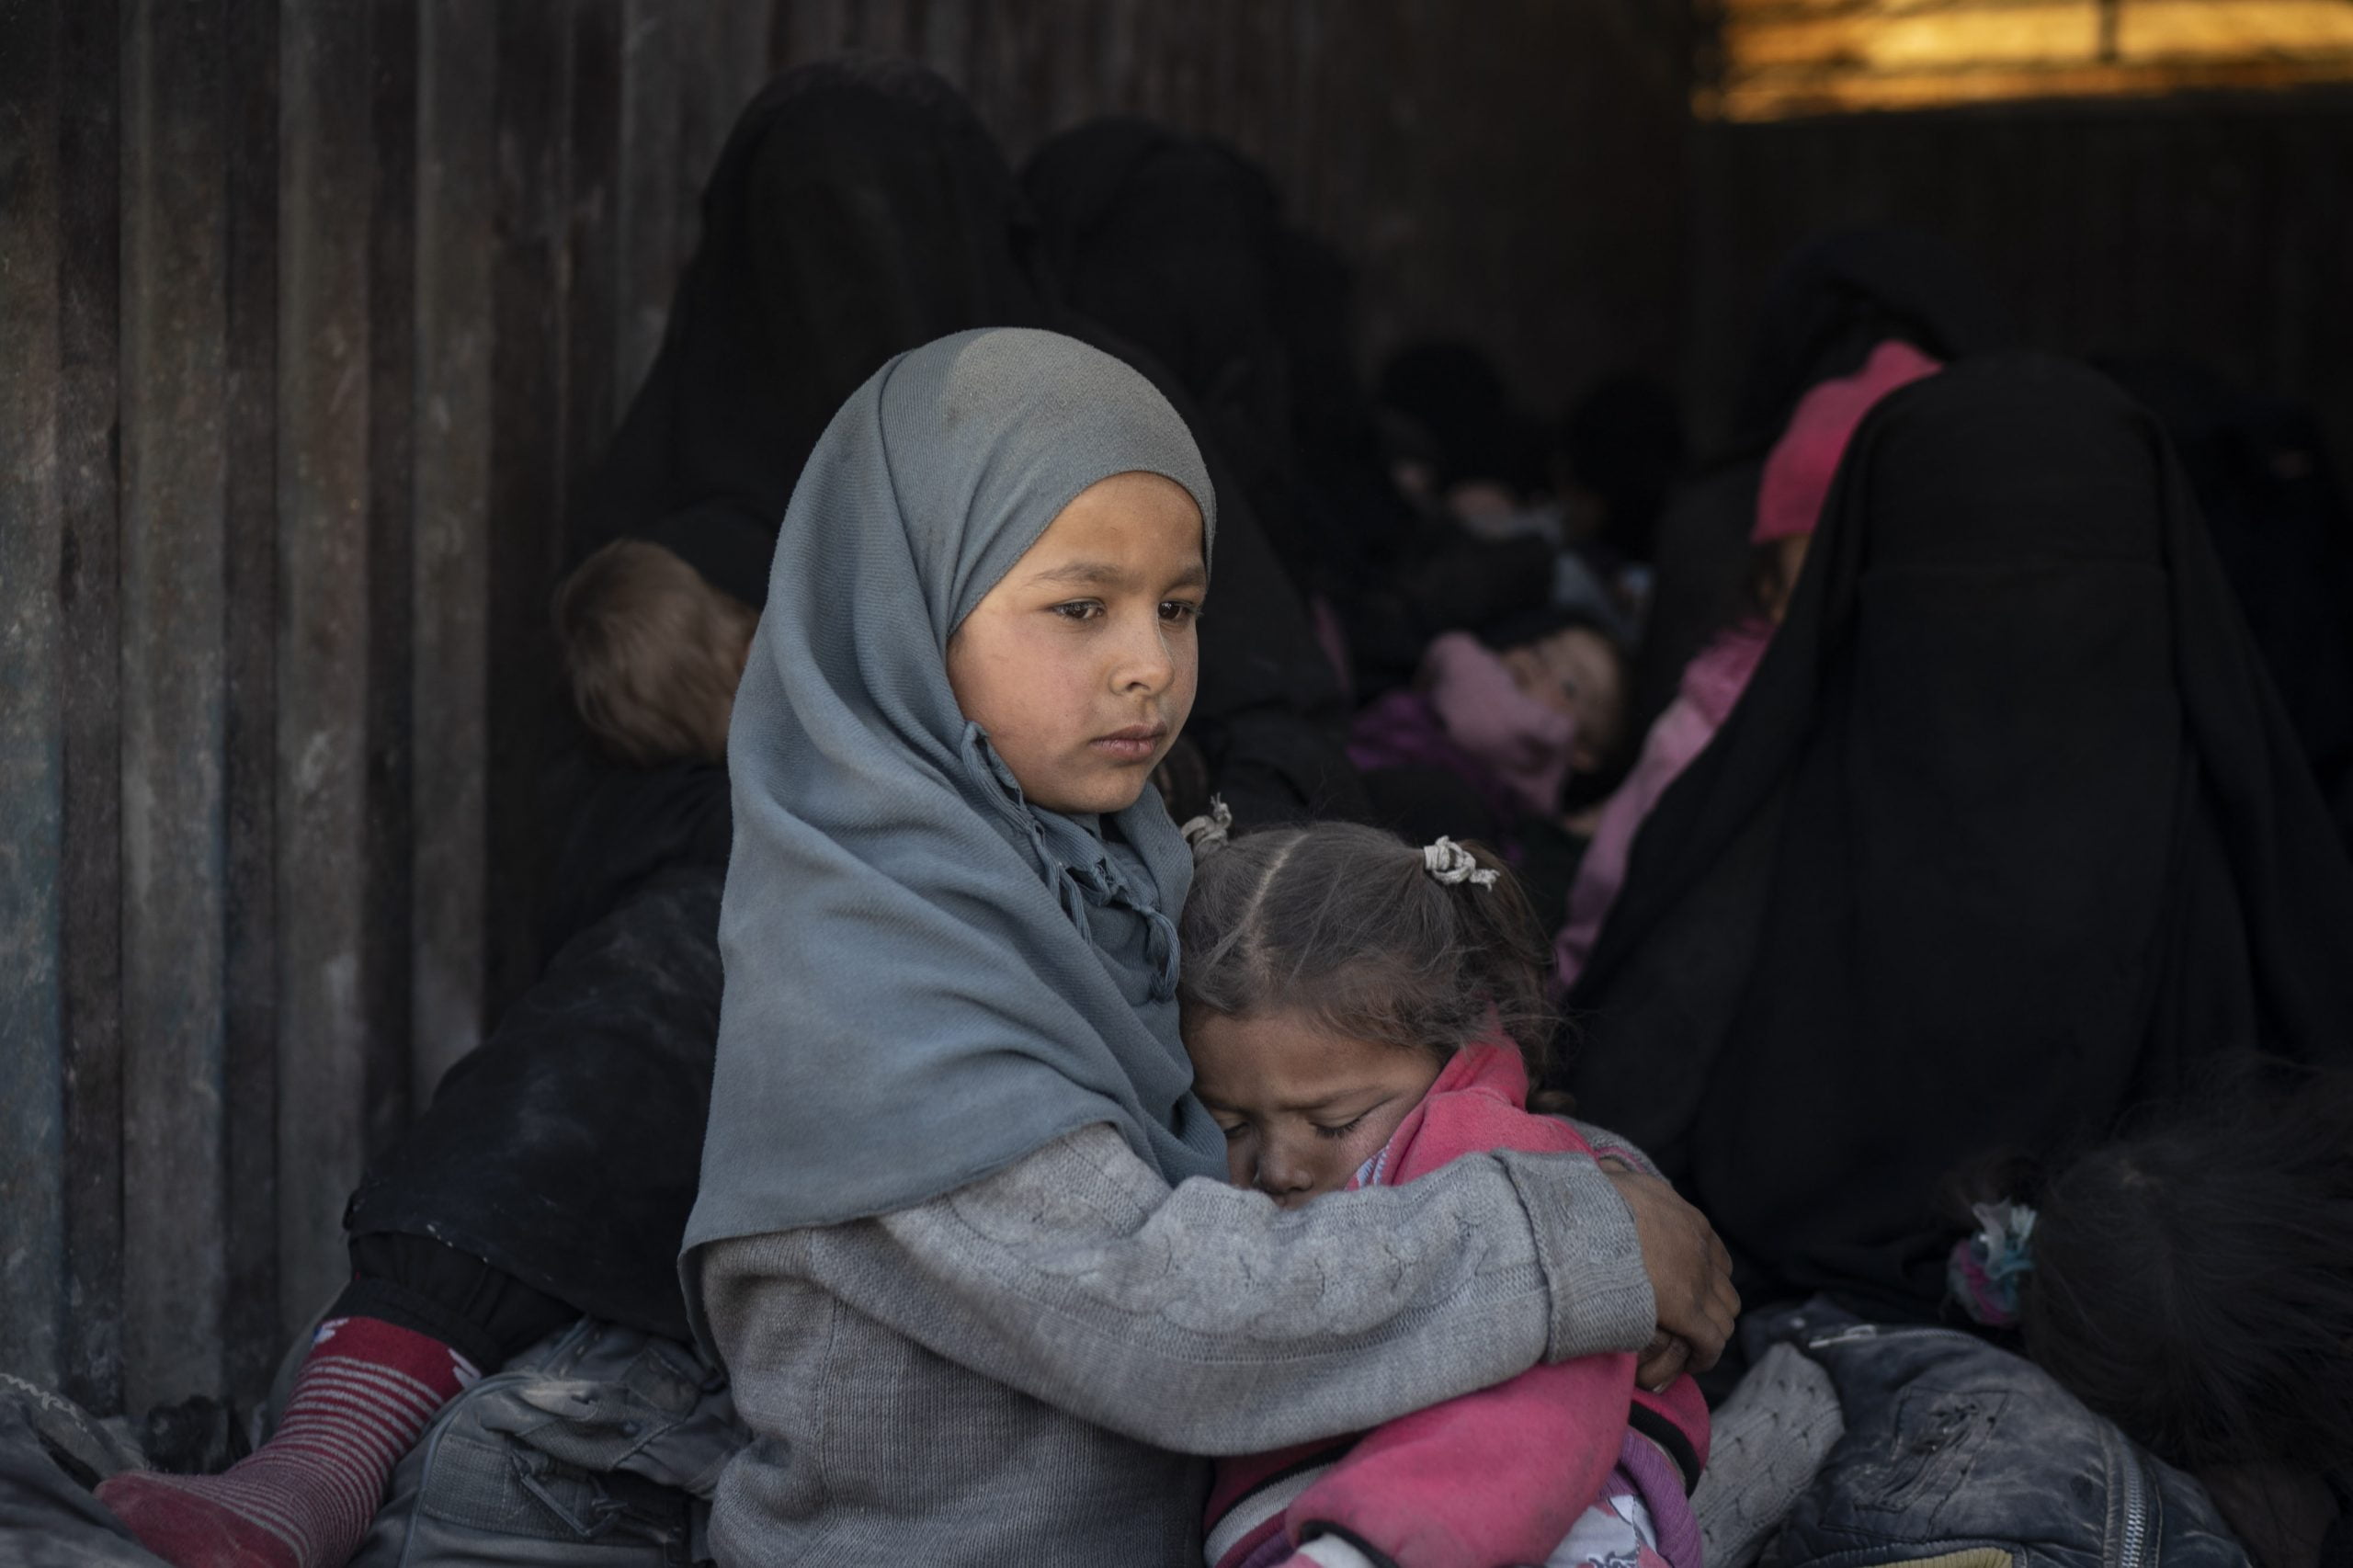 Le MFA est au courant des orphelins en Syrie via les médias - Norway Today - 3